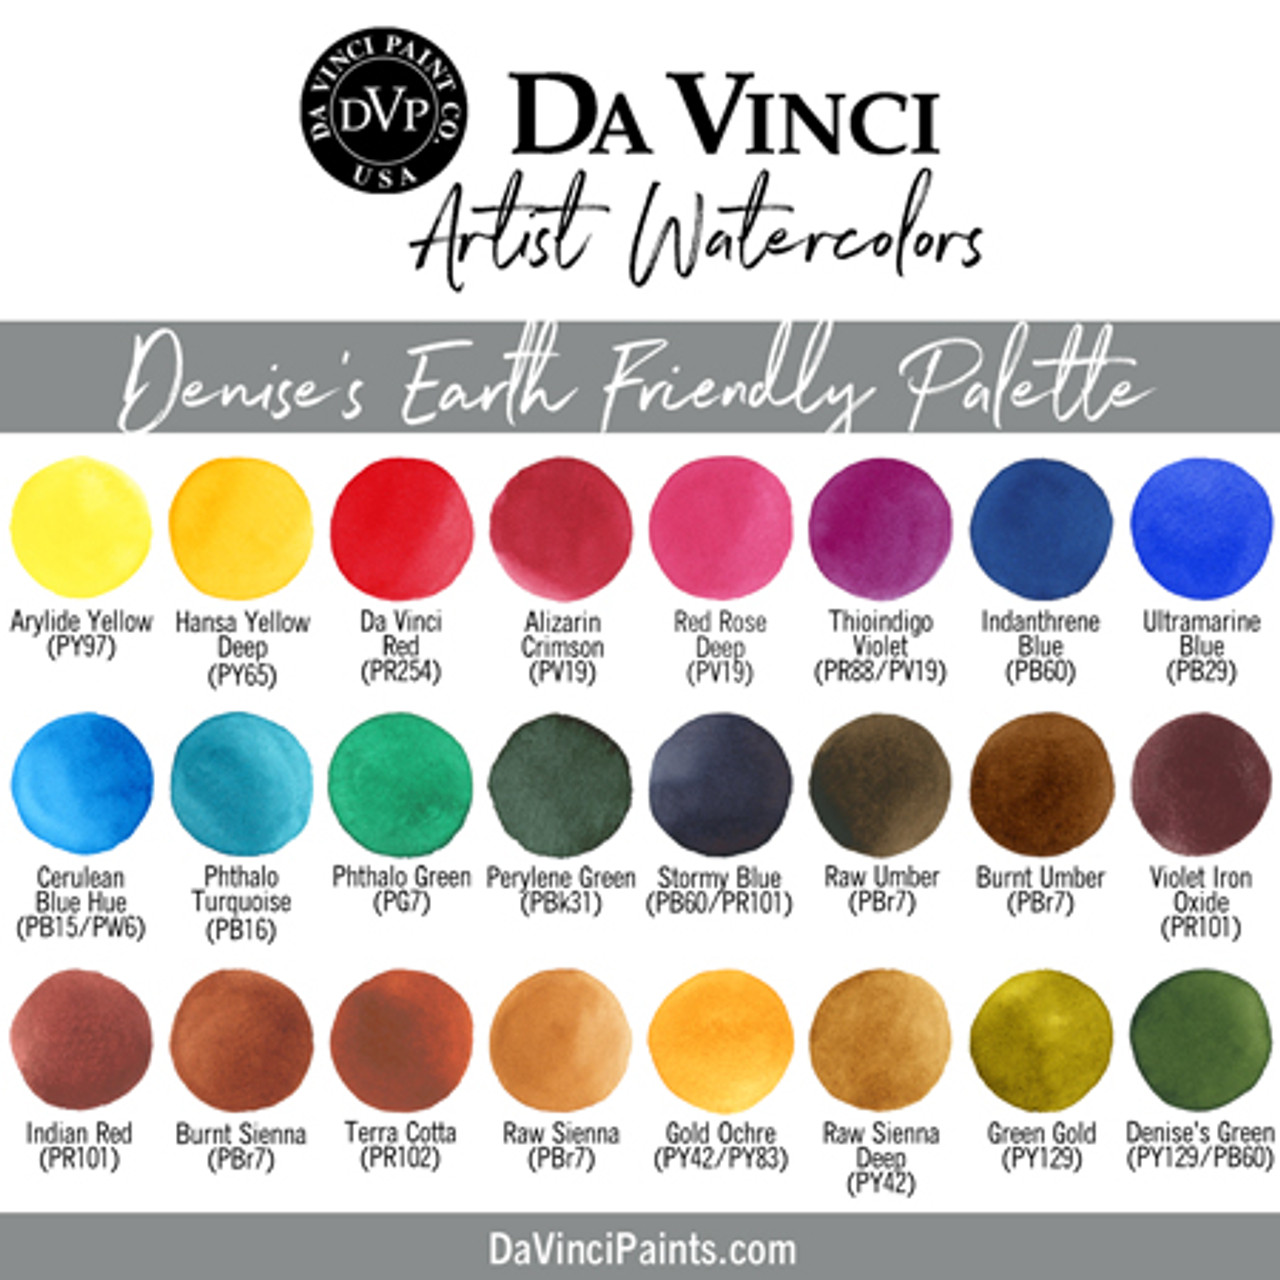 My 2019 Da Vinci Palette - Just Add Water Silly